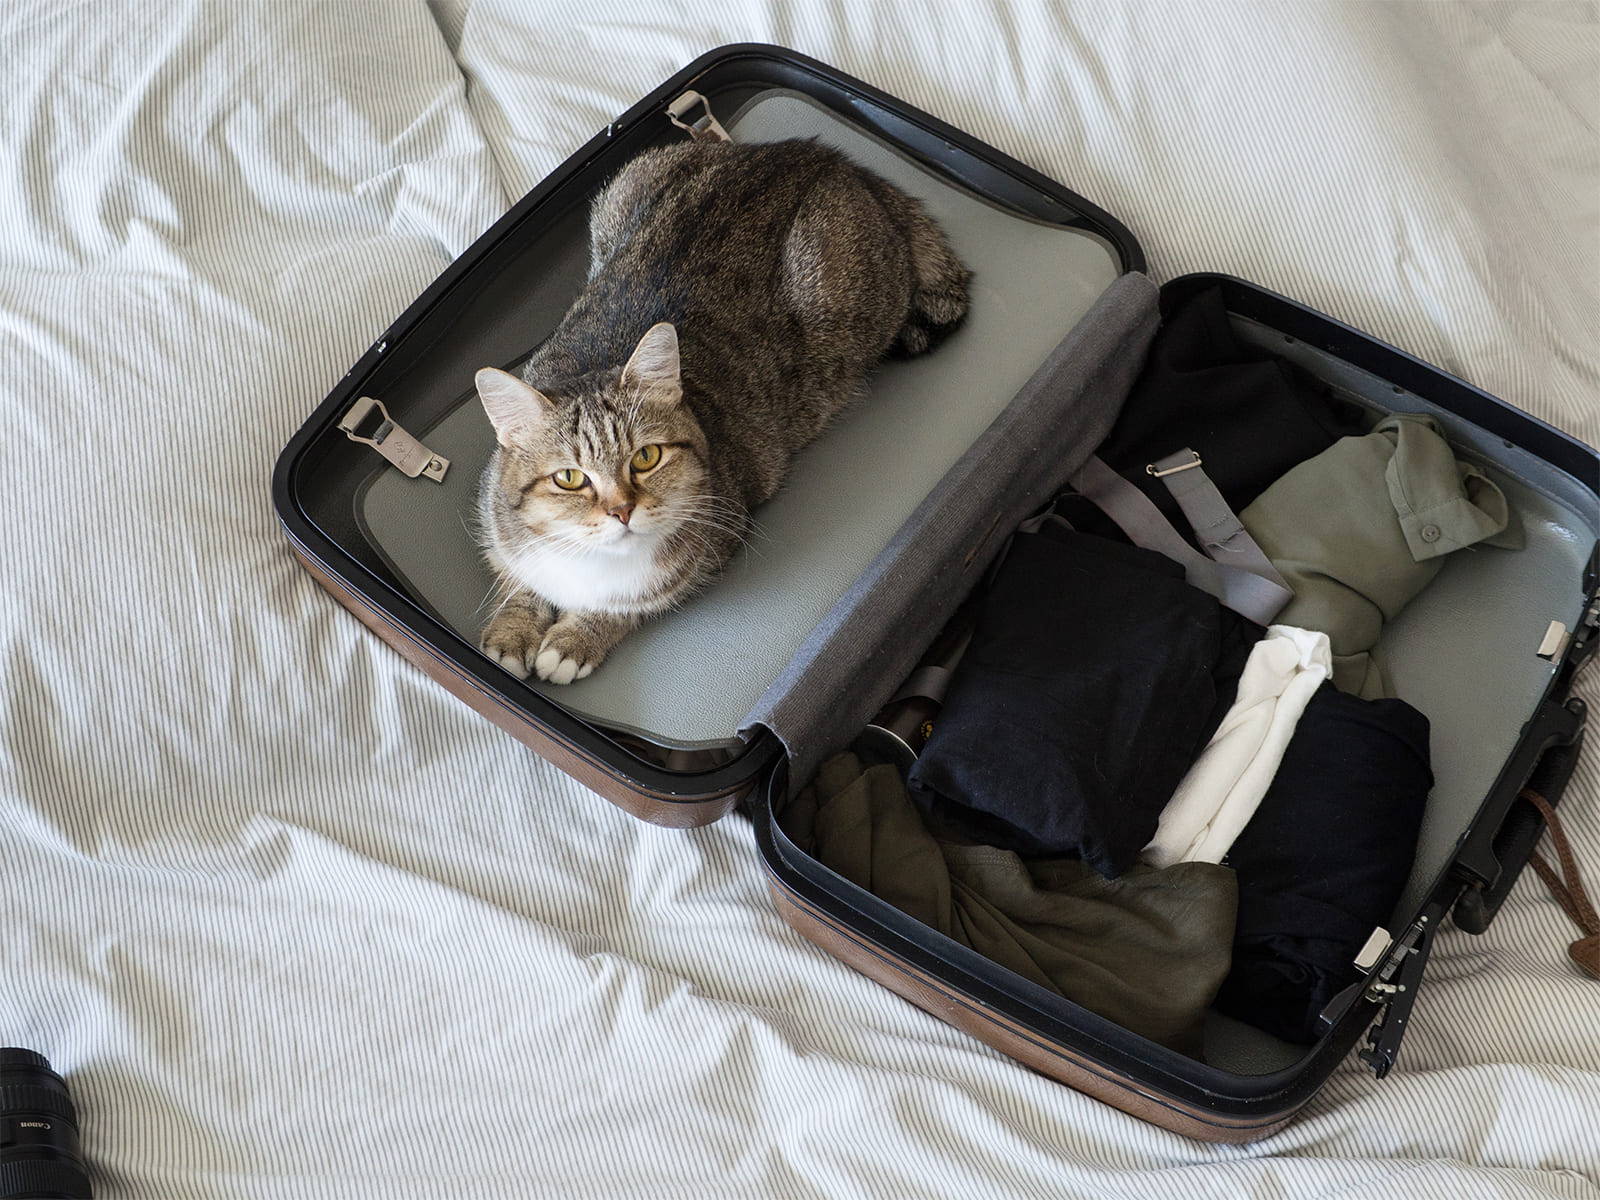 Katze sitzt in einem Koffer